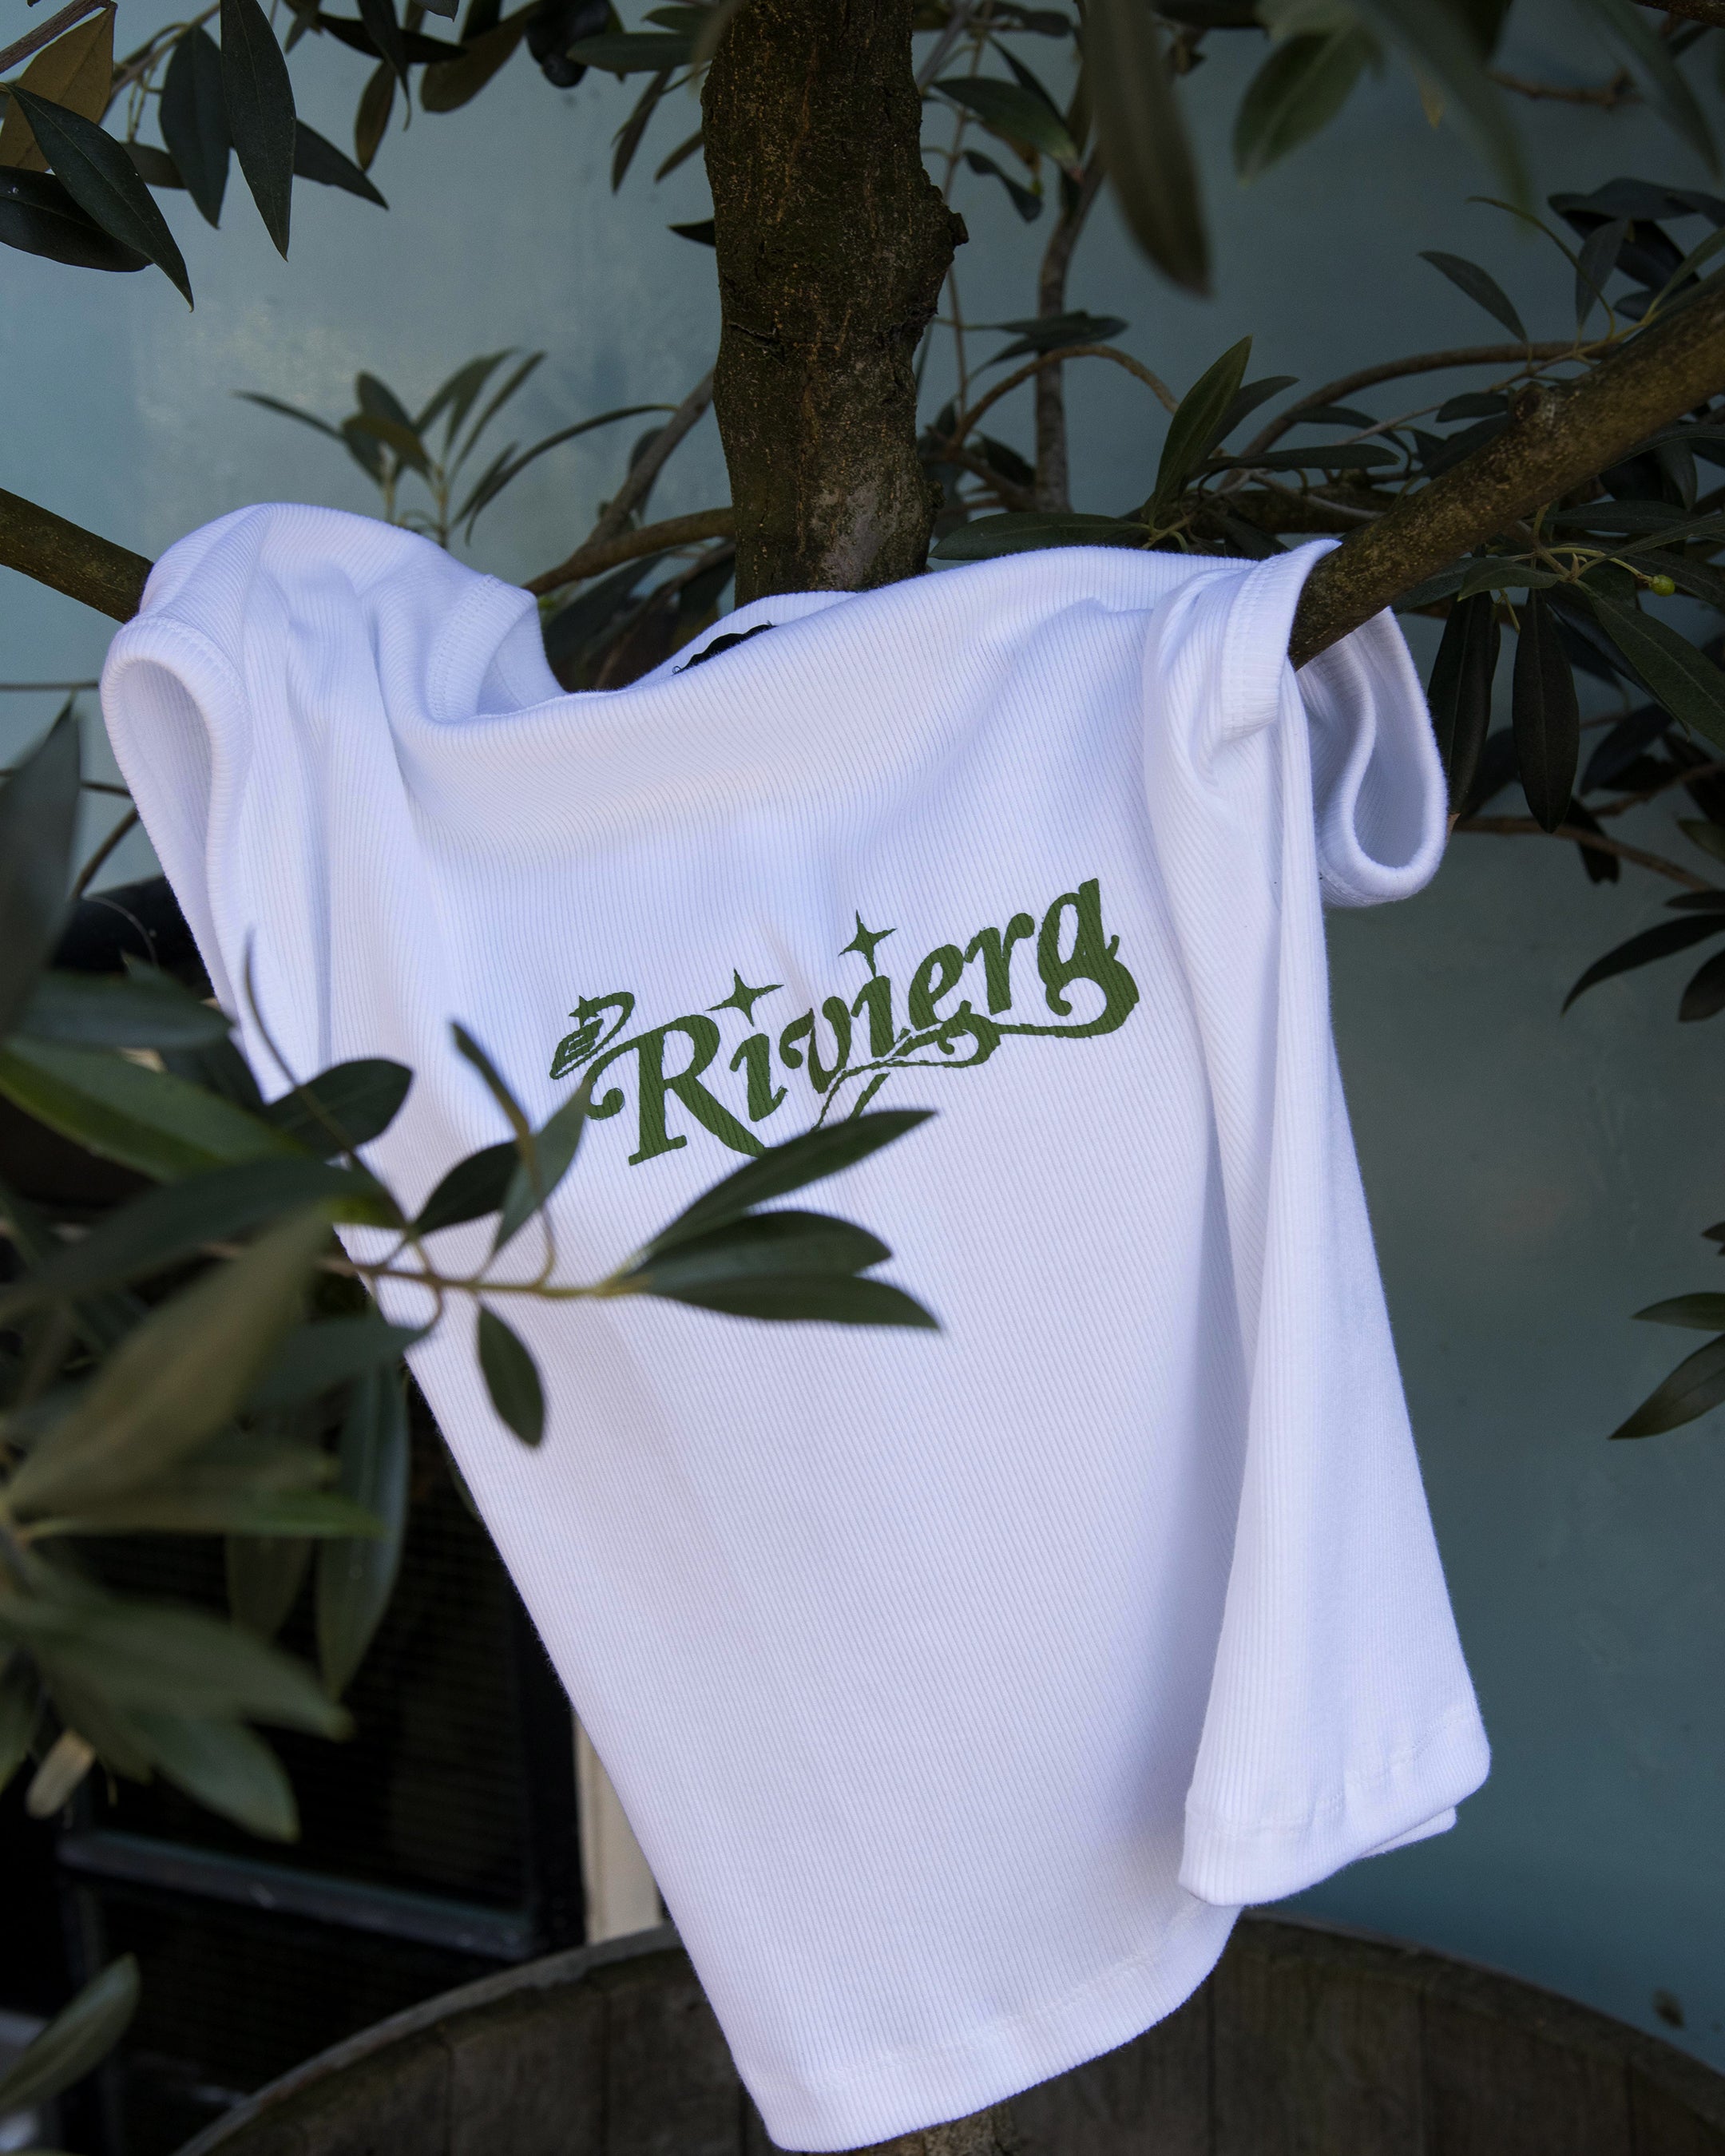 Riviera Baby T-Shirt